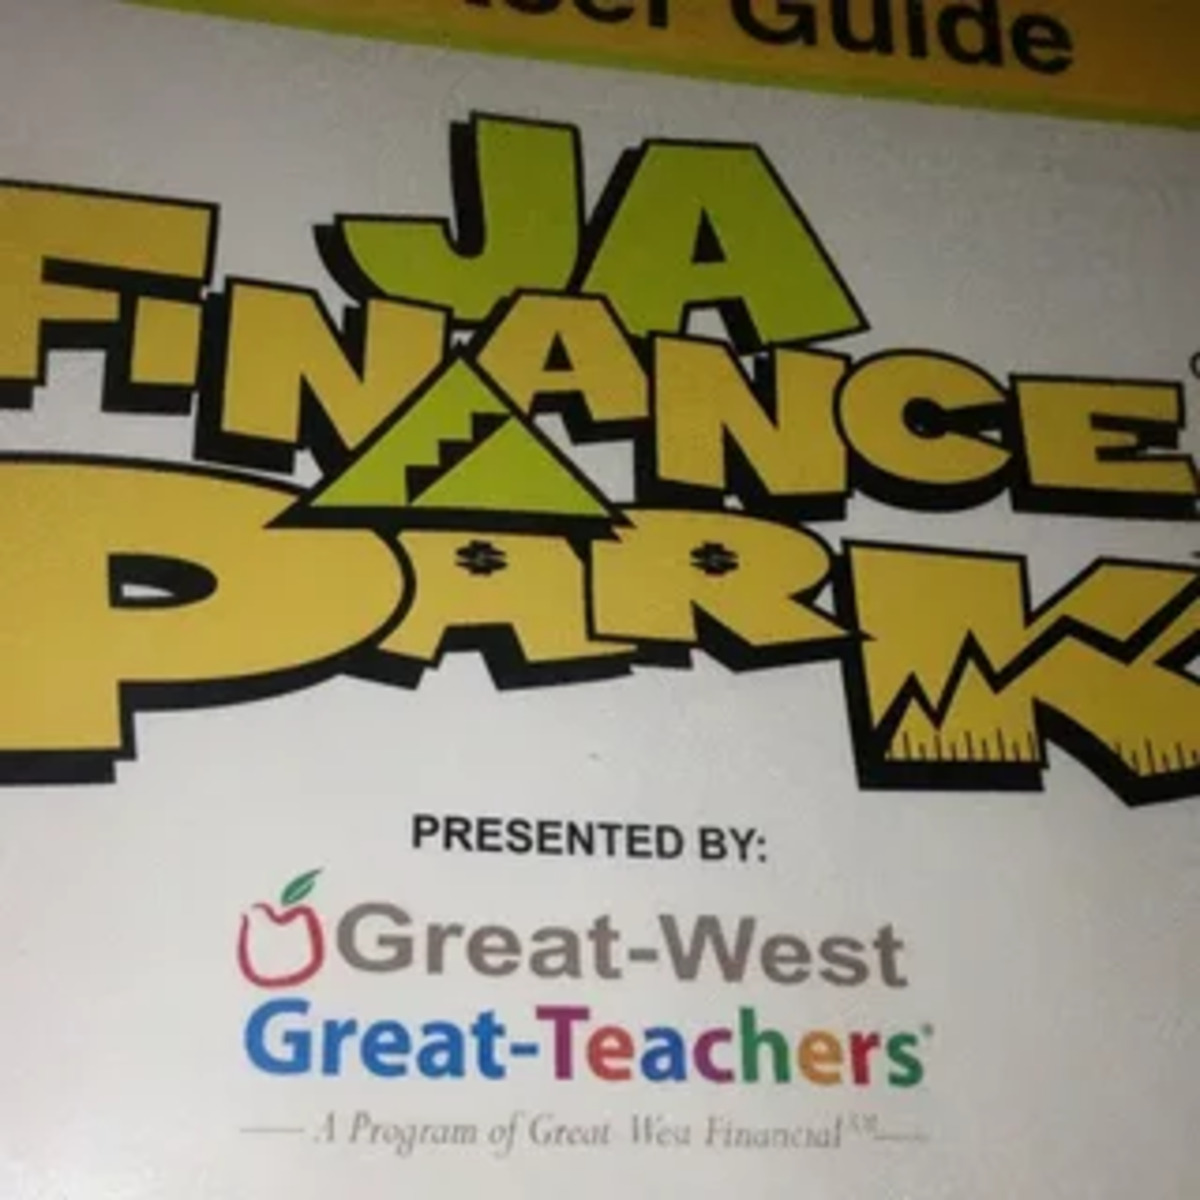 Find JA Finance Park: Junior Achievement of Greater Washington